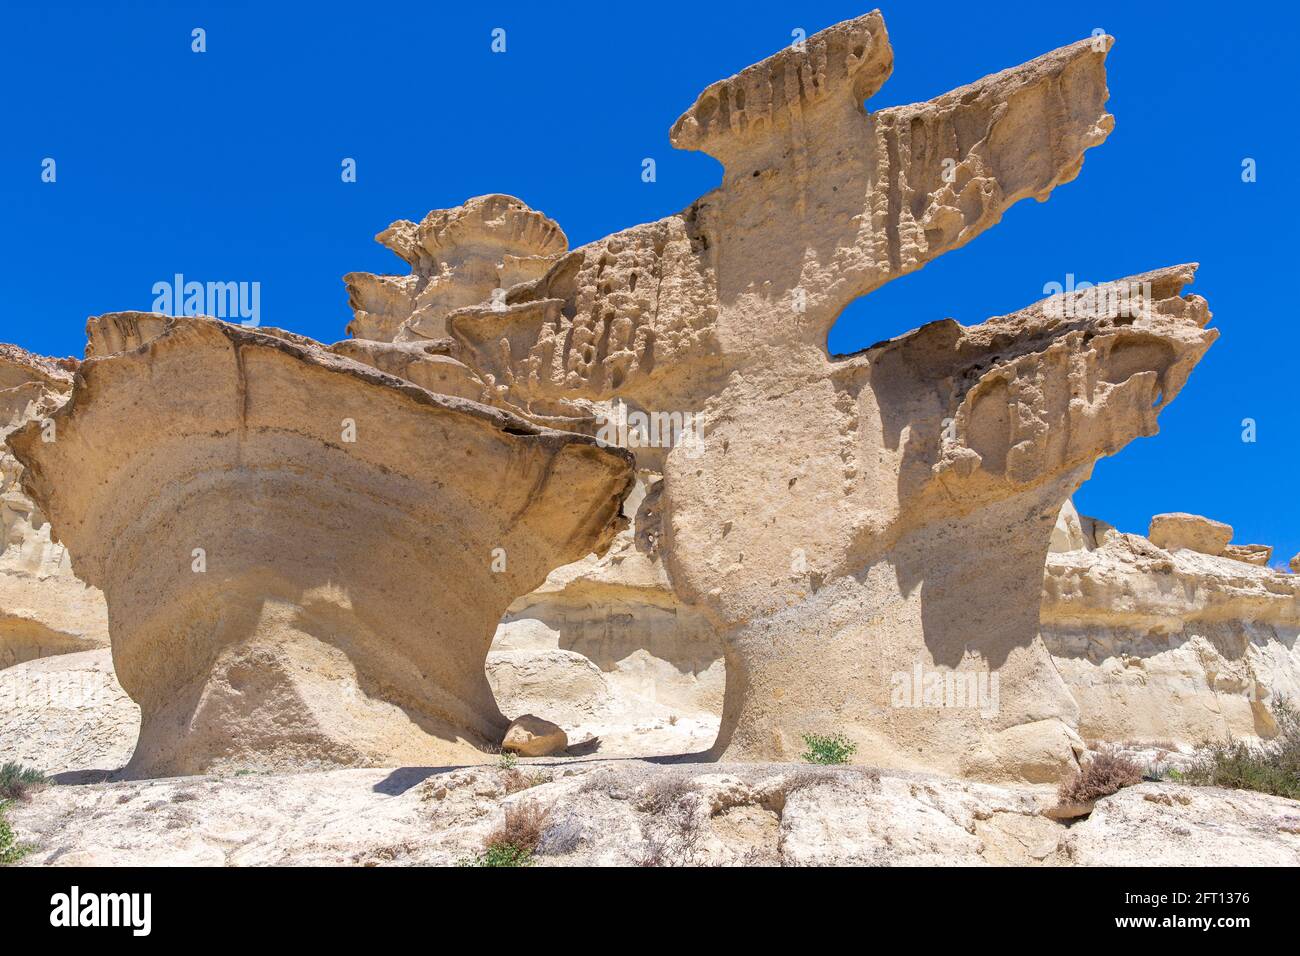 Vista fantástica de formas caprichosas producidas por la erosión en las montañas, Bolnuevo, Mazarrón, Murcia, España, Europa. Foto de stock